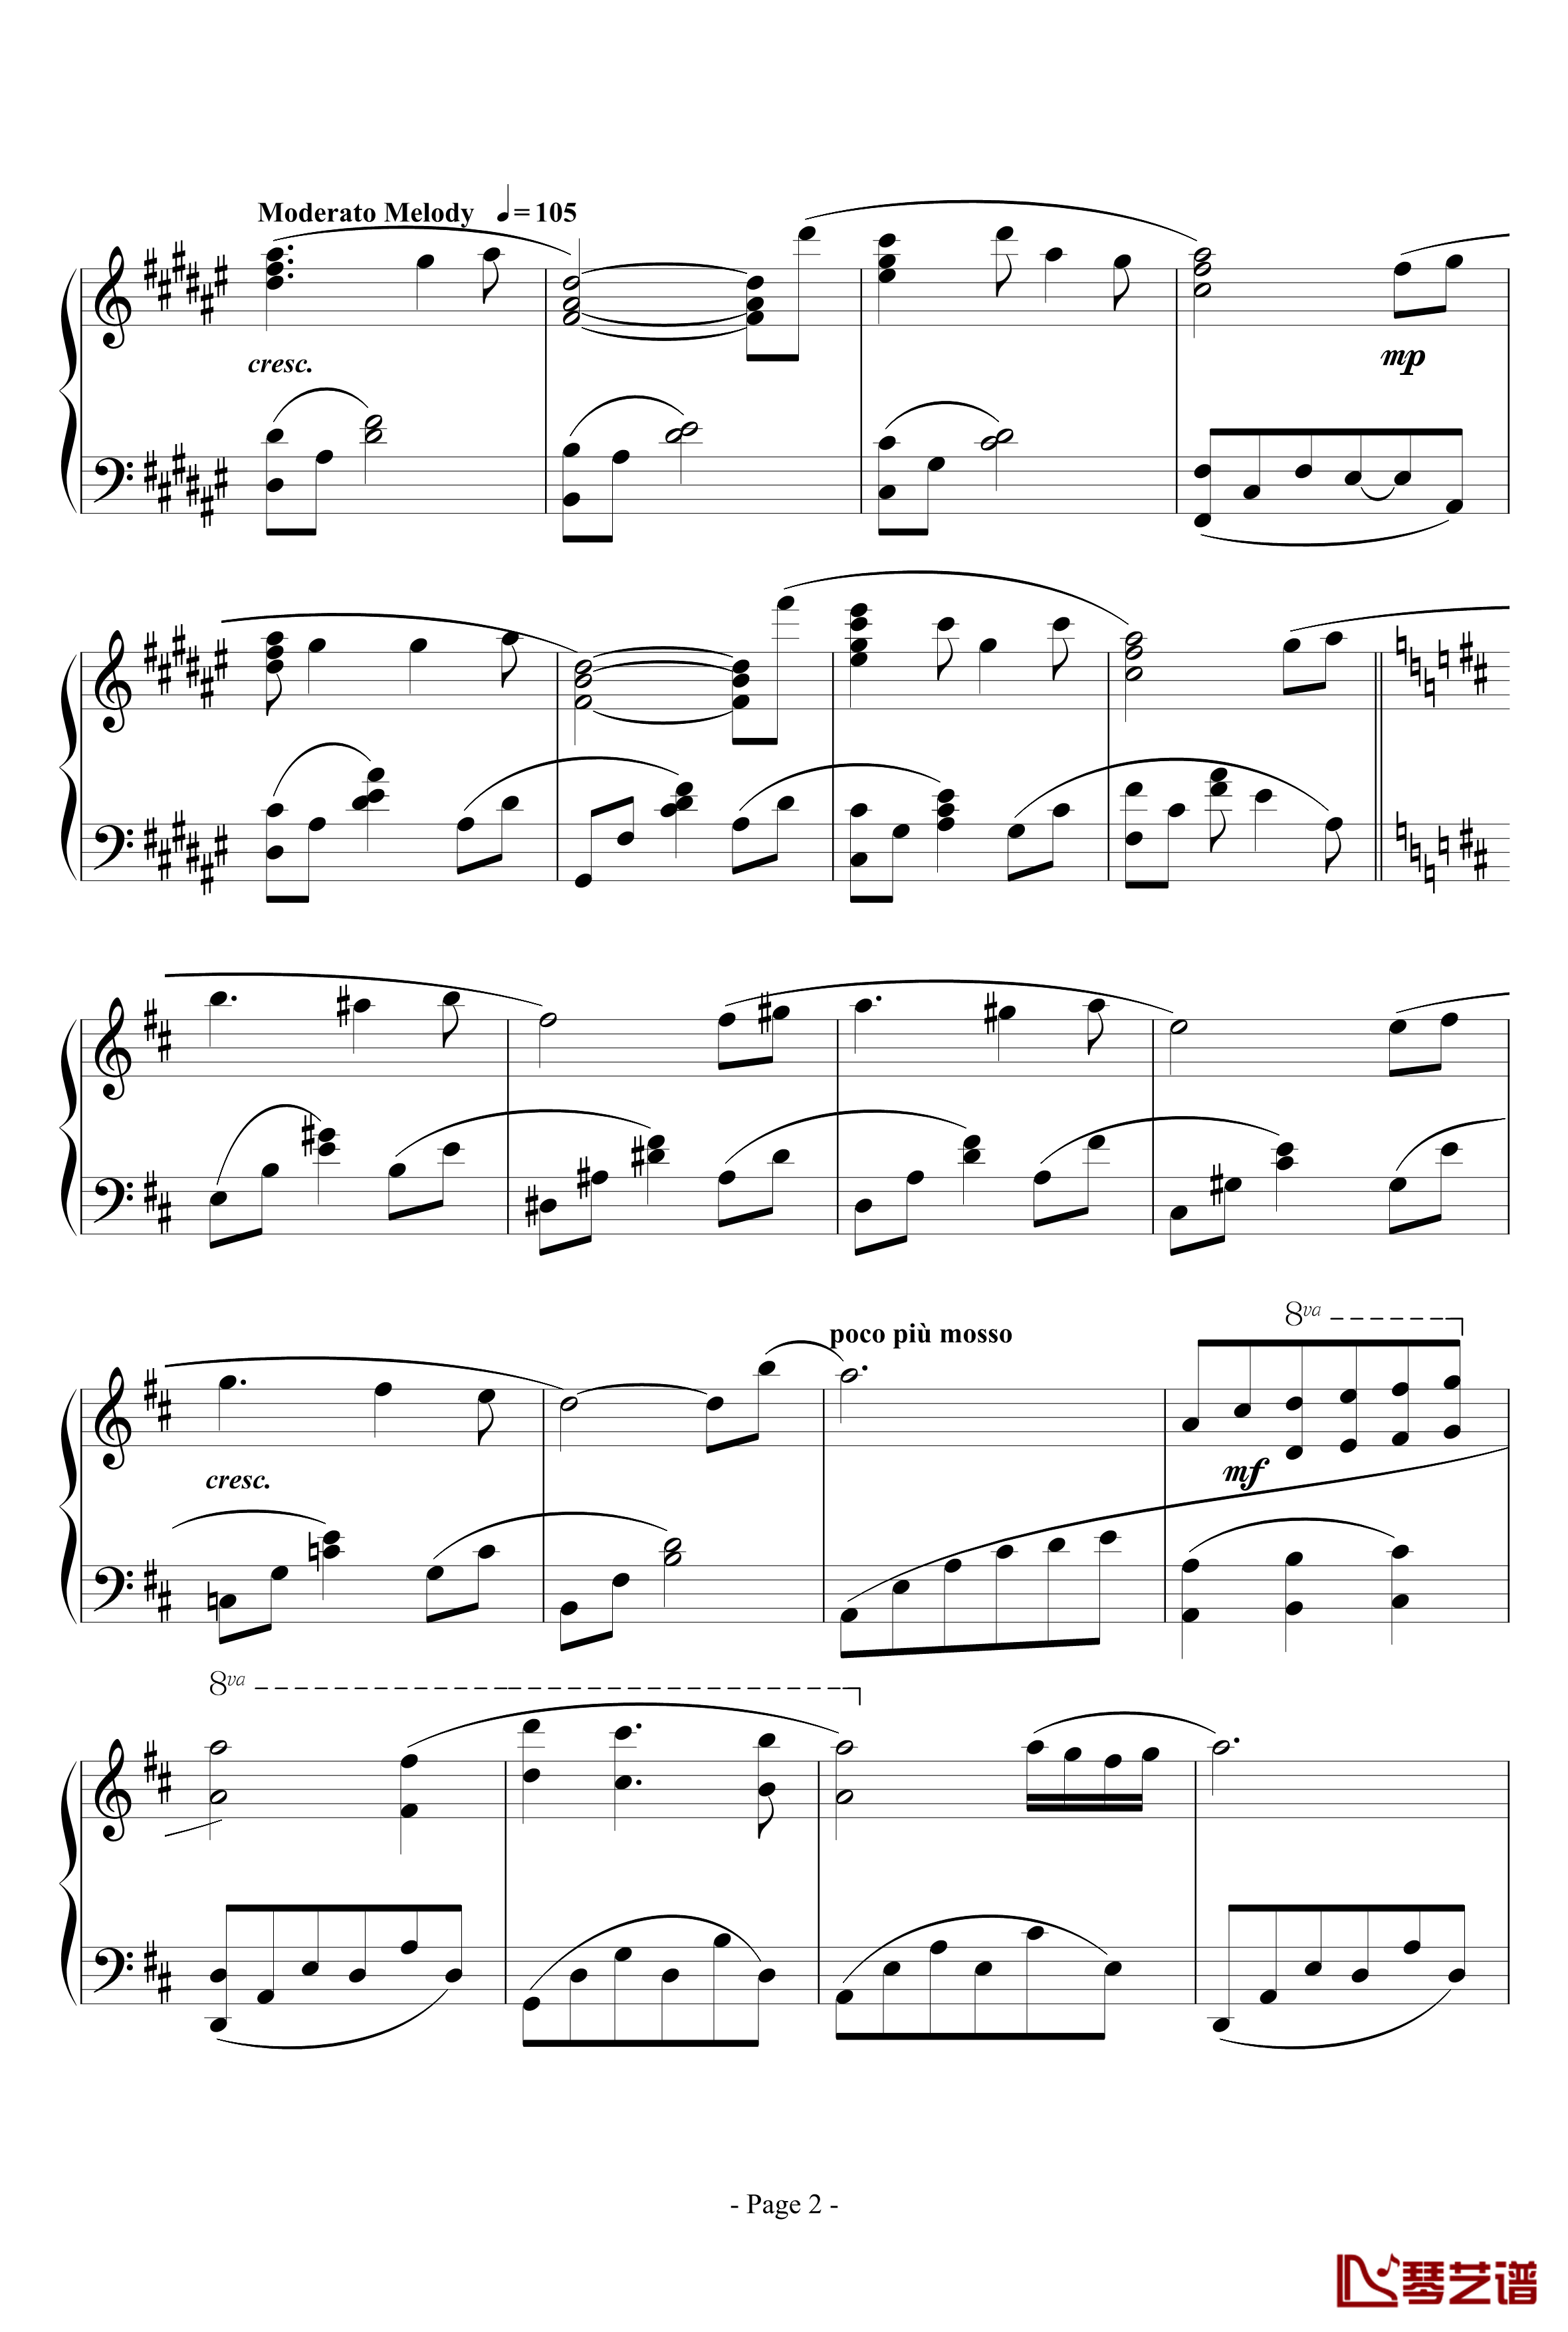 思绪之舞钢琴谱-lujianxiang5552